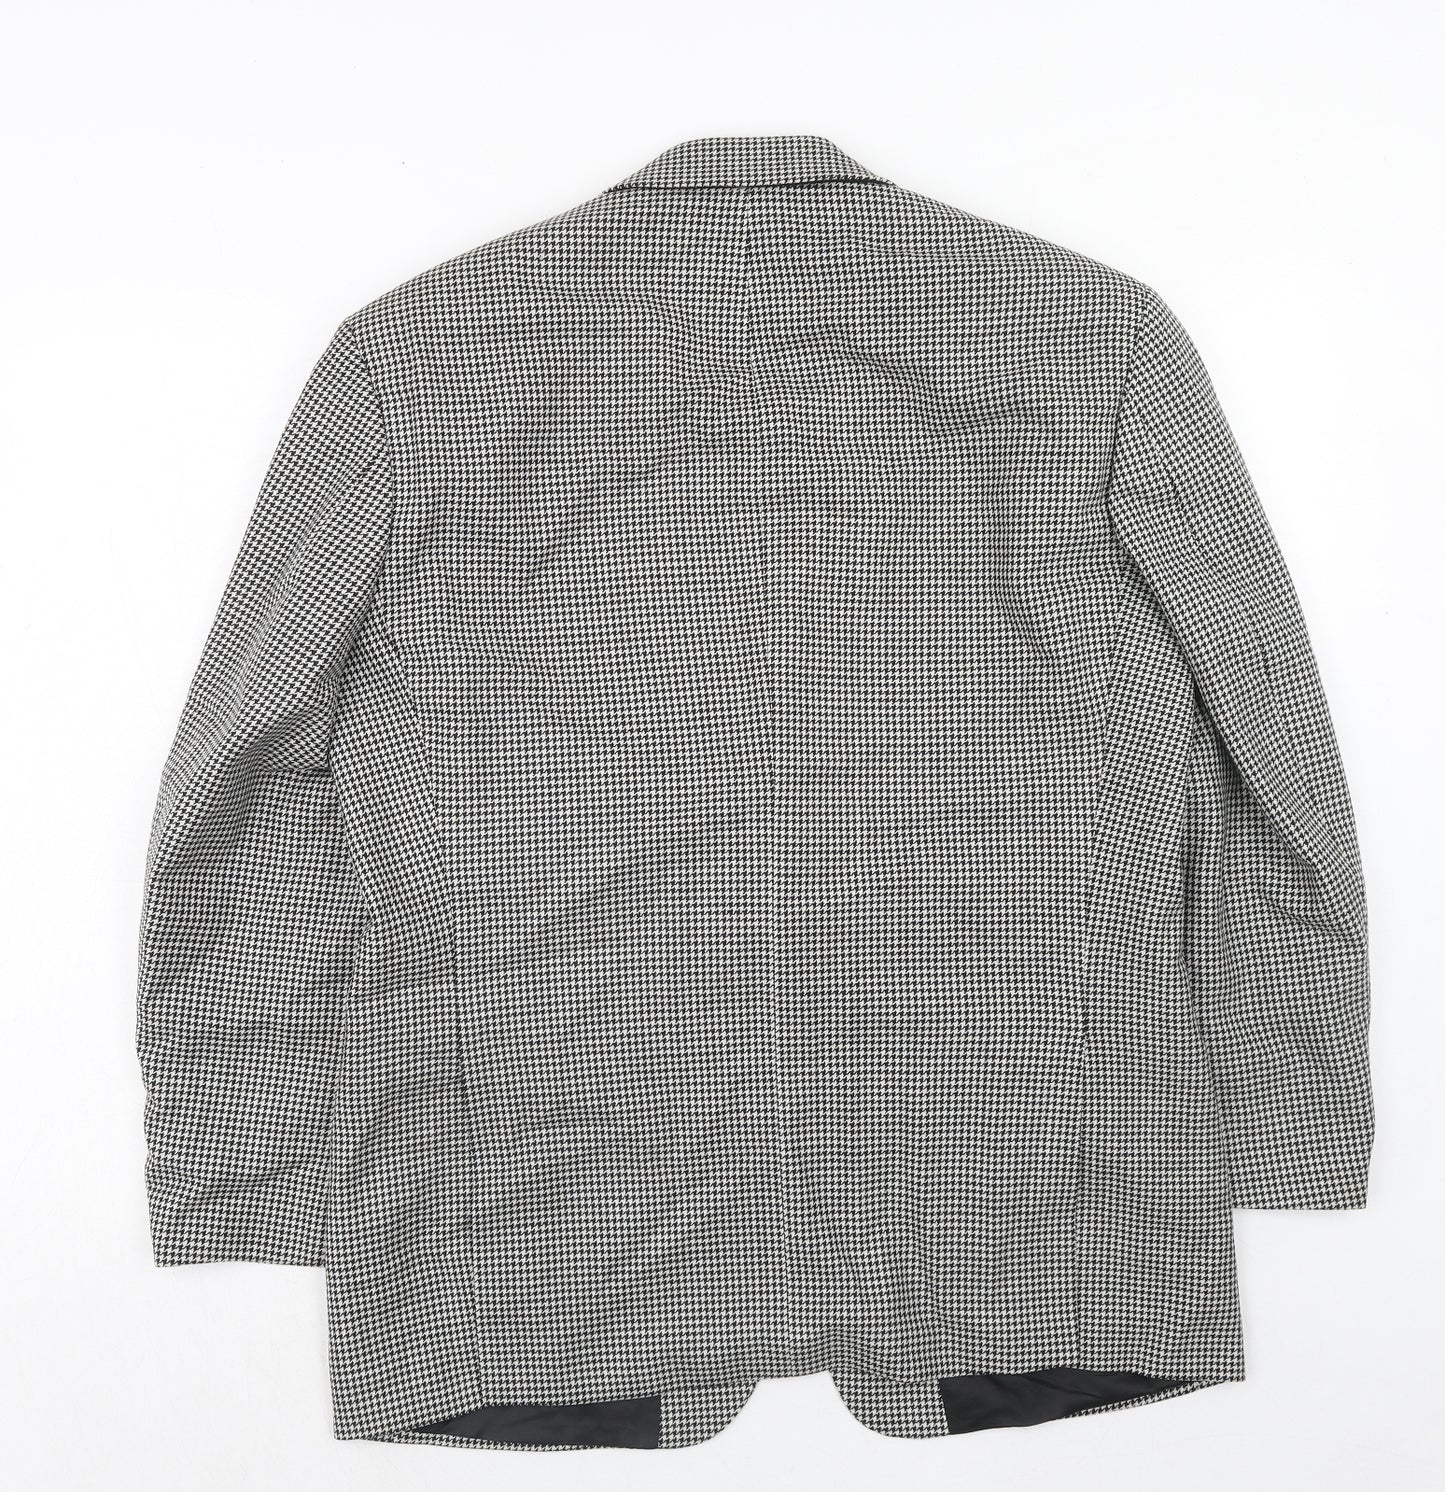 Marks and Spencer Mens Black Houndstooth Wool Jacket Suit Jacket Size 40 Regular